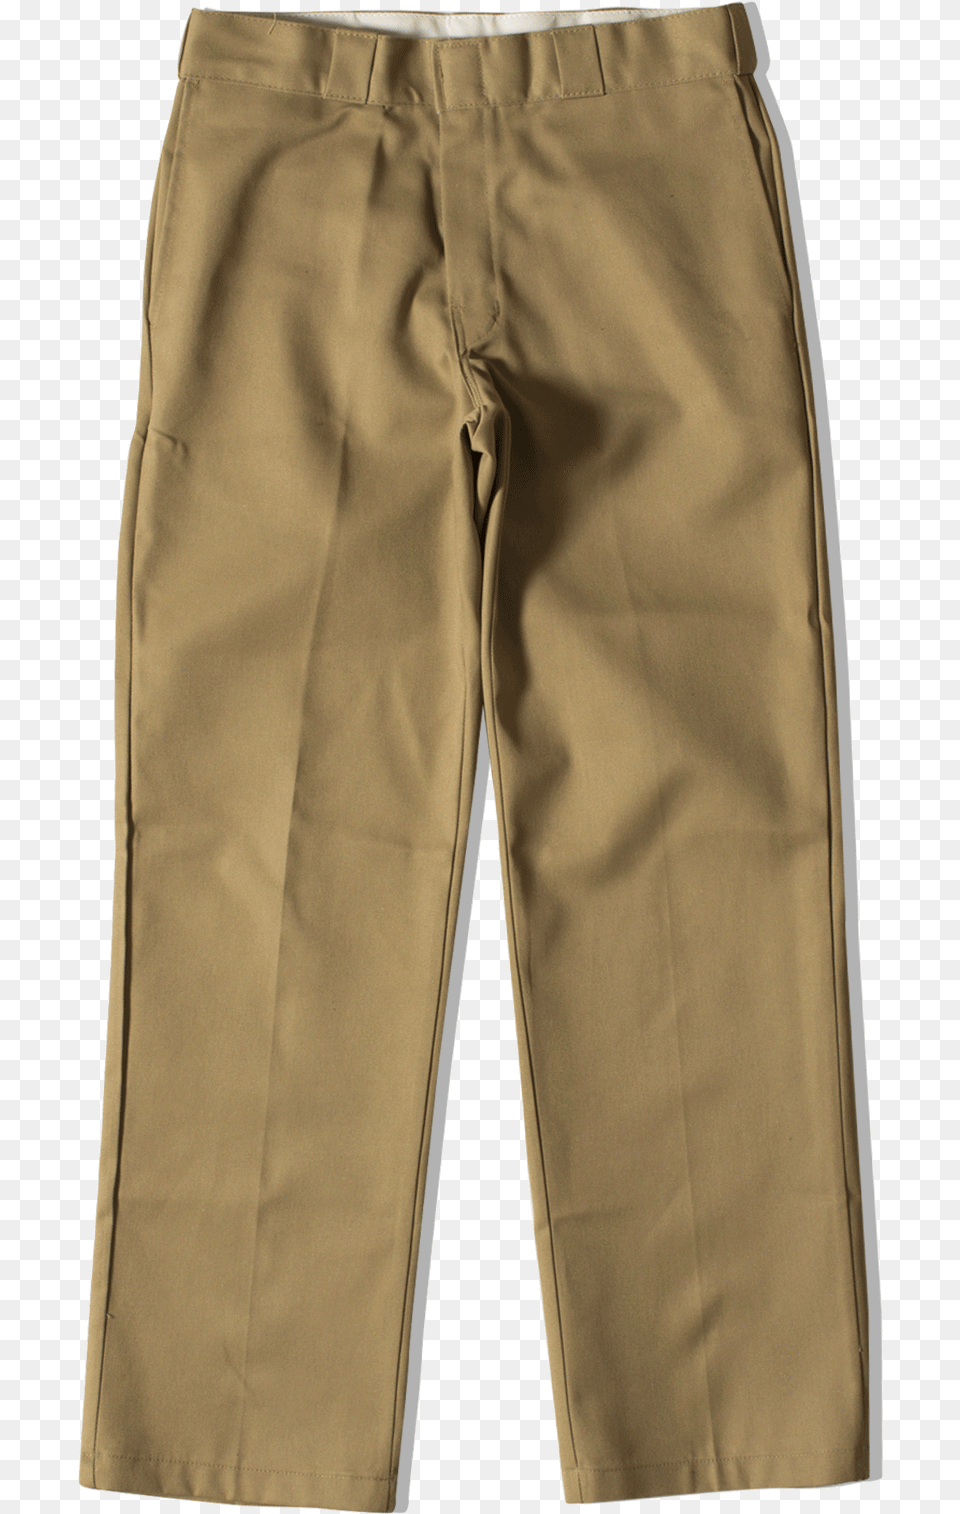 Dickies Solid, Clothing, Khaki, Shorts, Pants Png